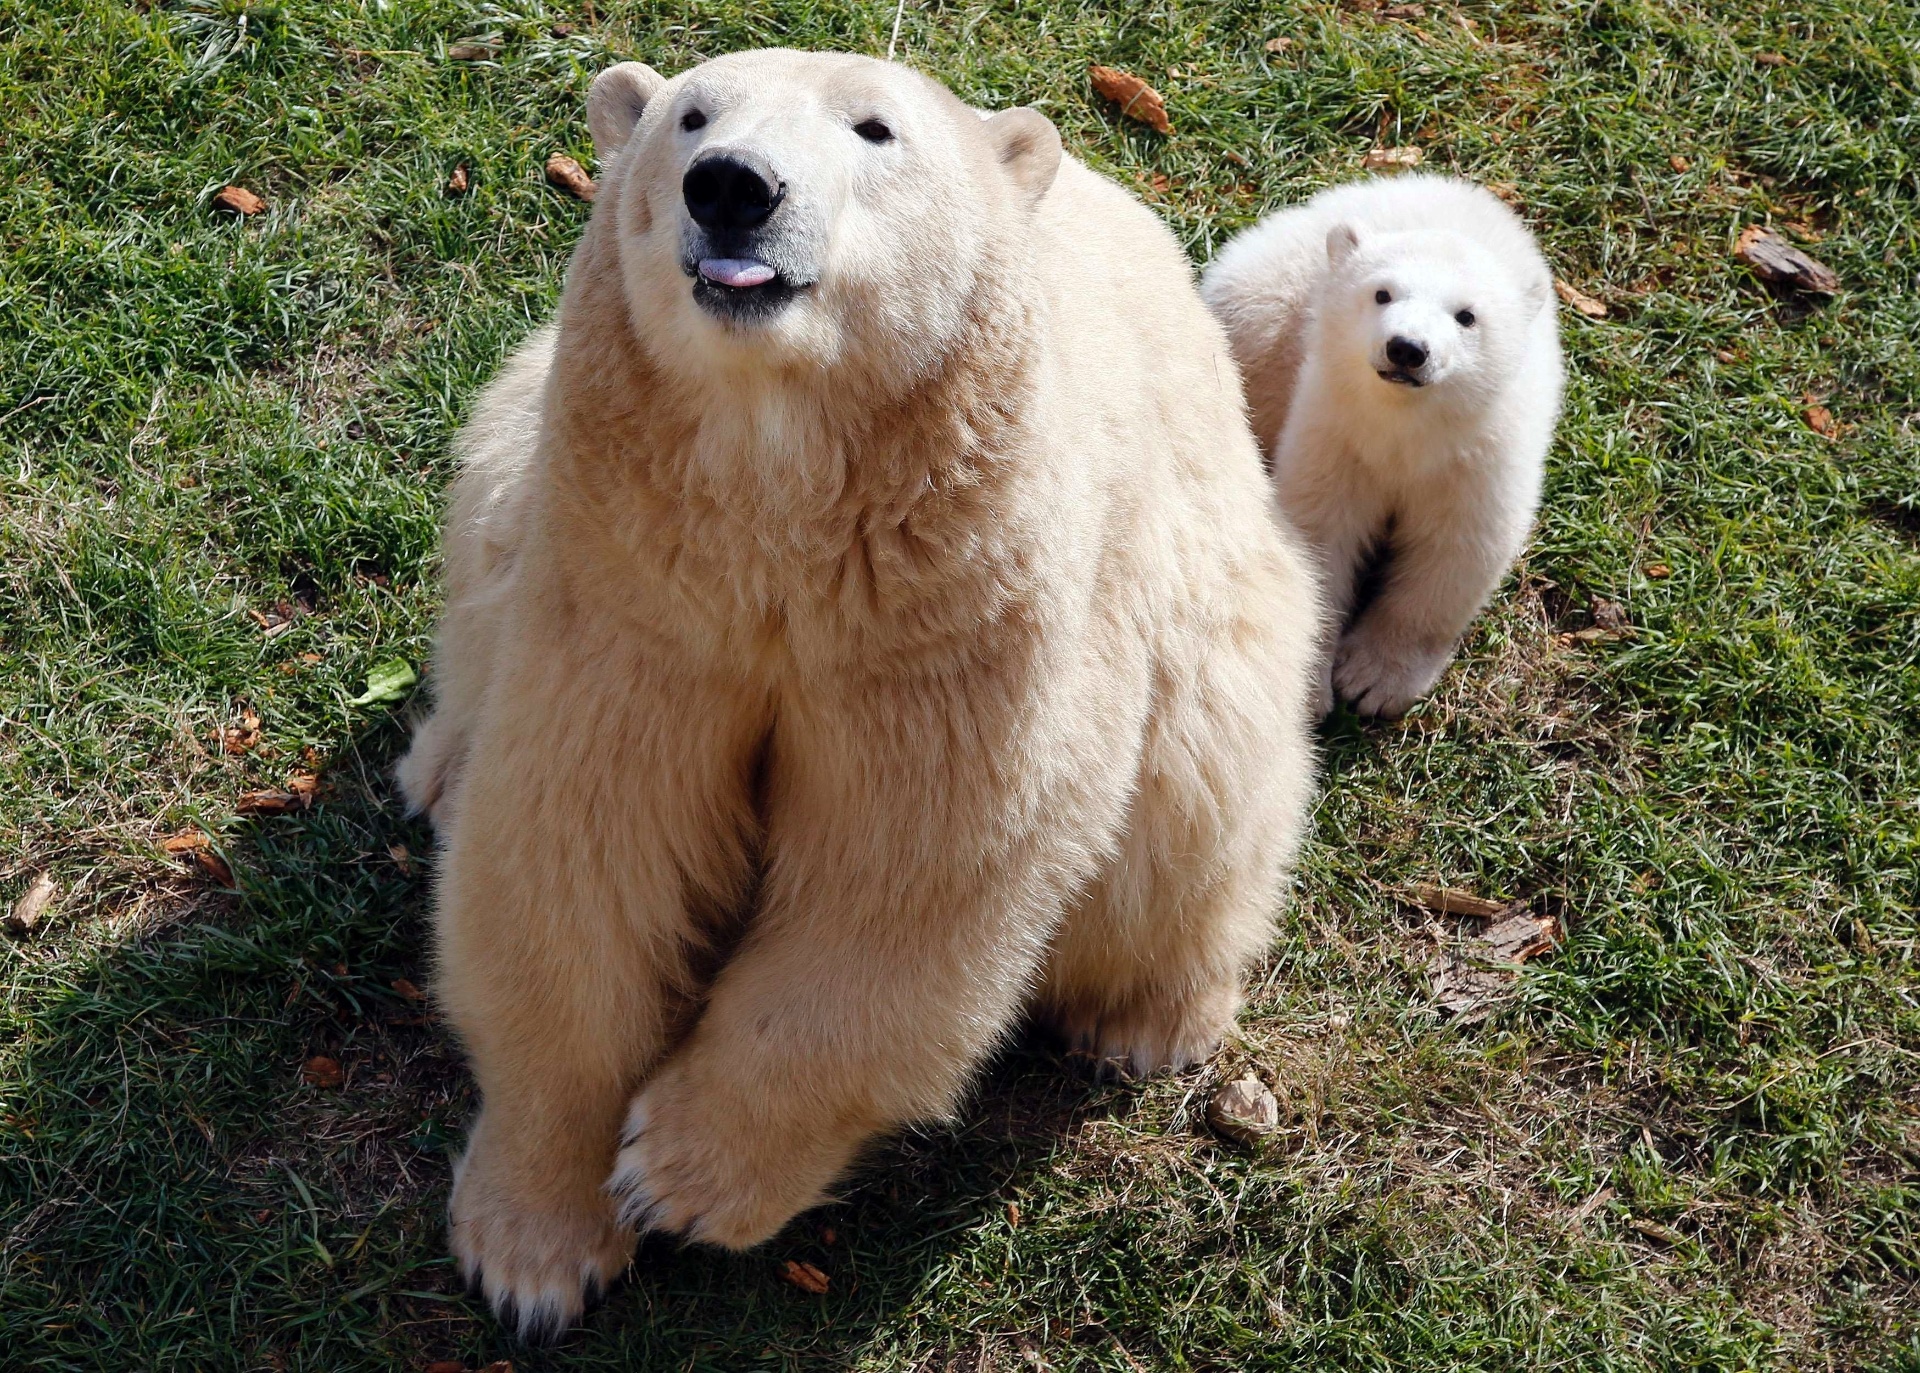 Fotos Filhote De Urso Polar D Show De Fofura Na Fran A